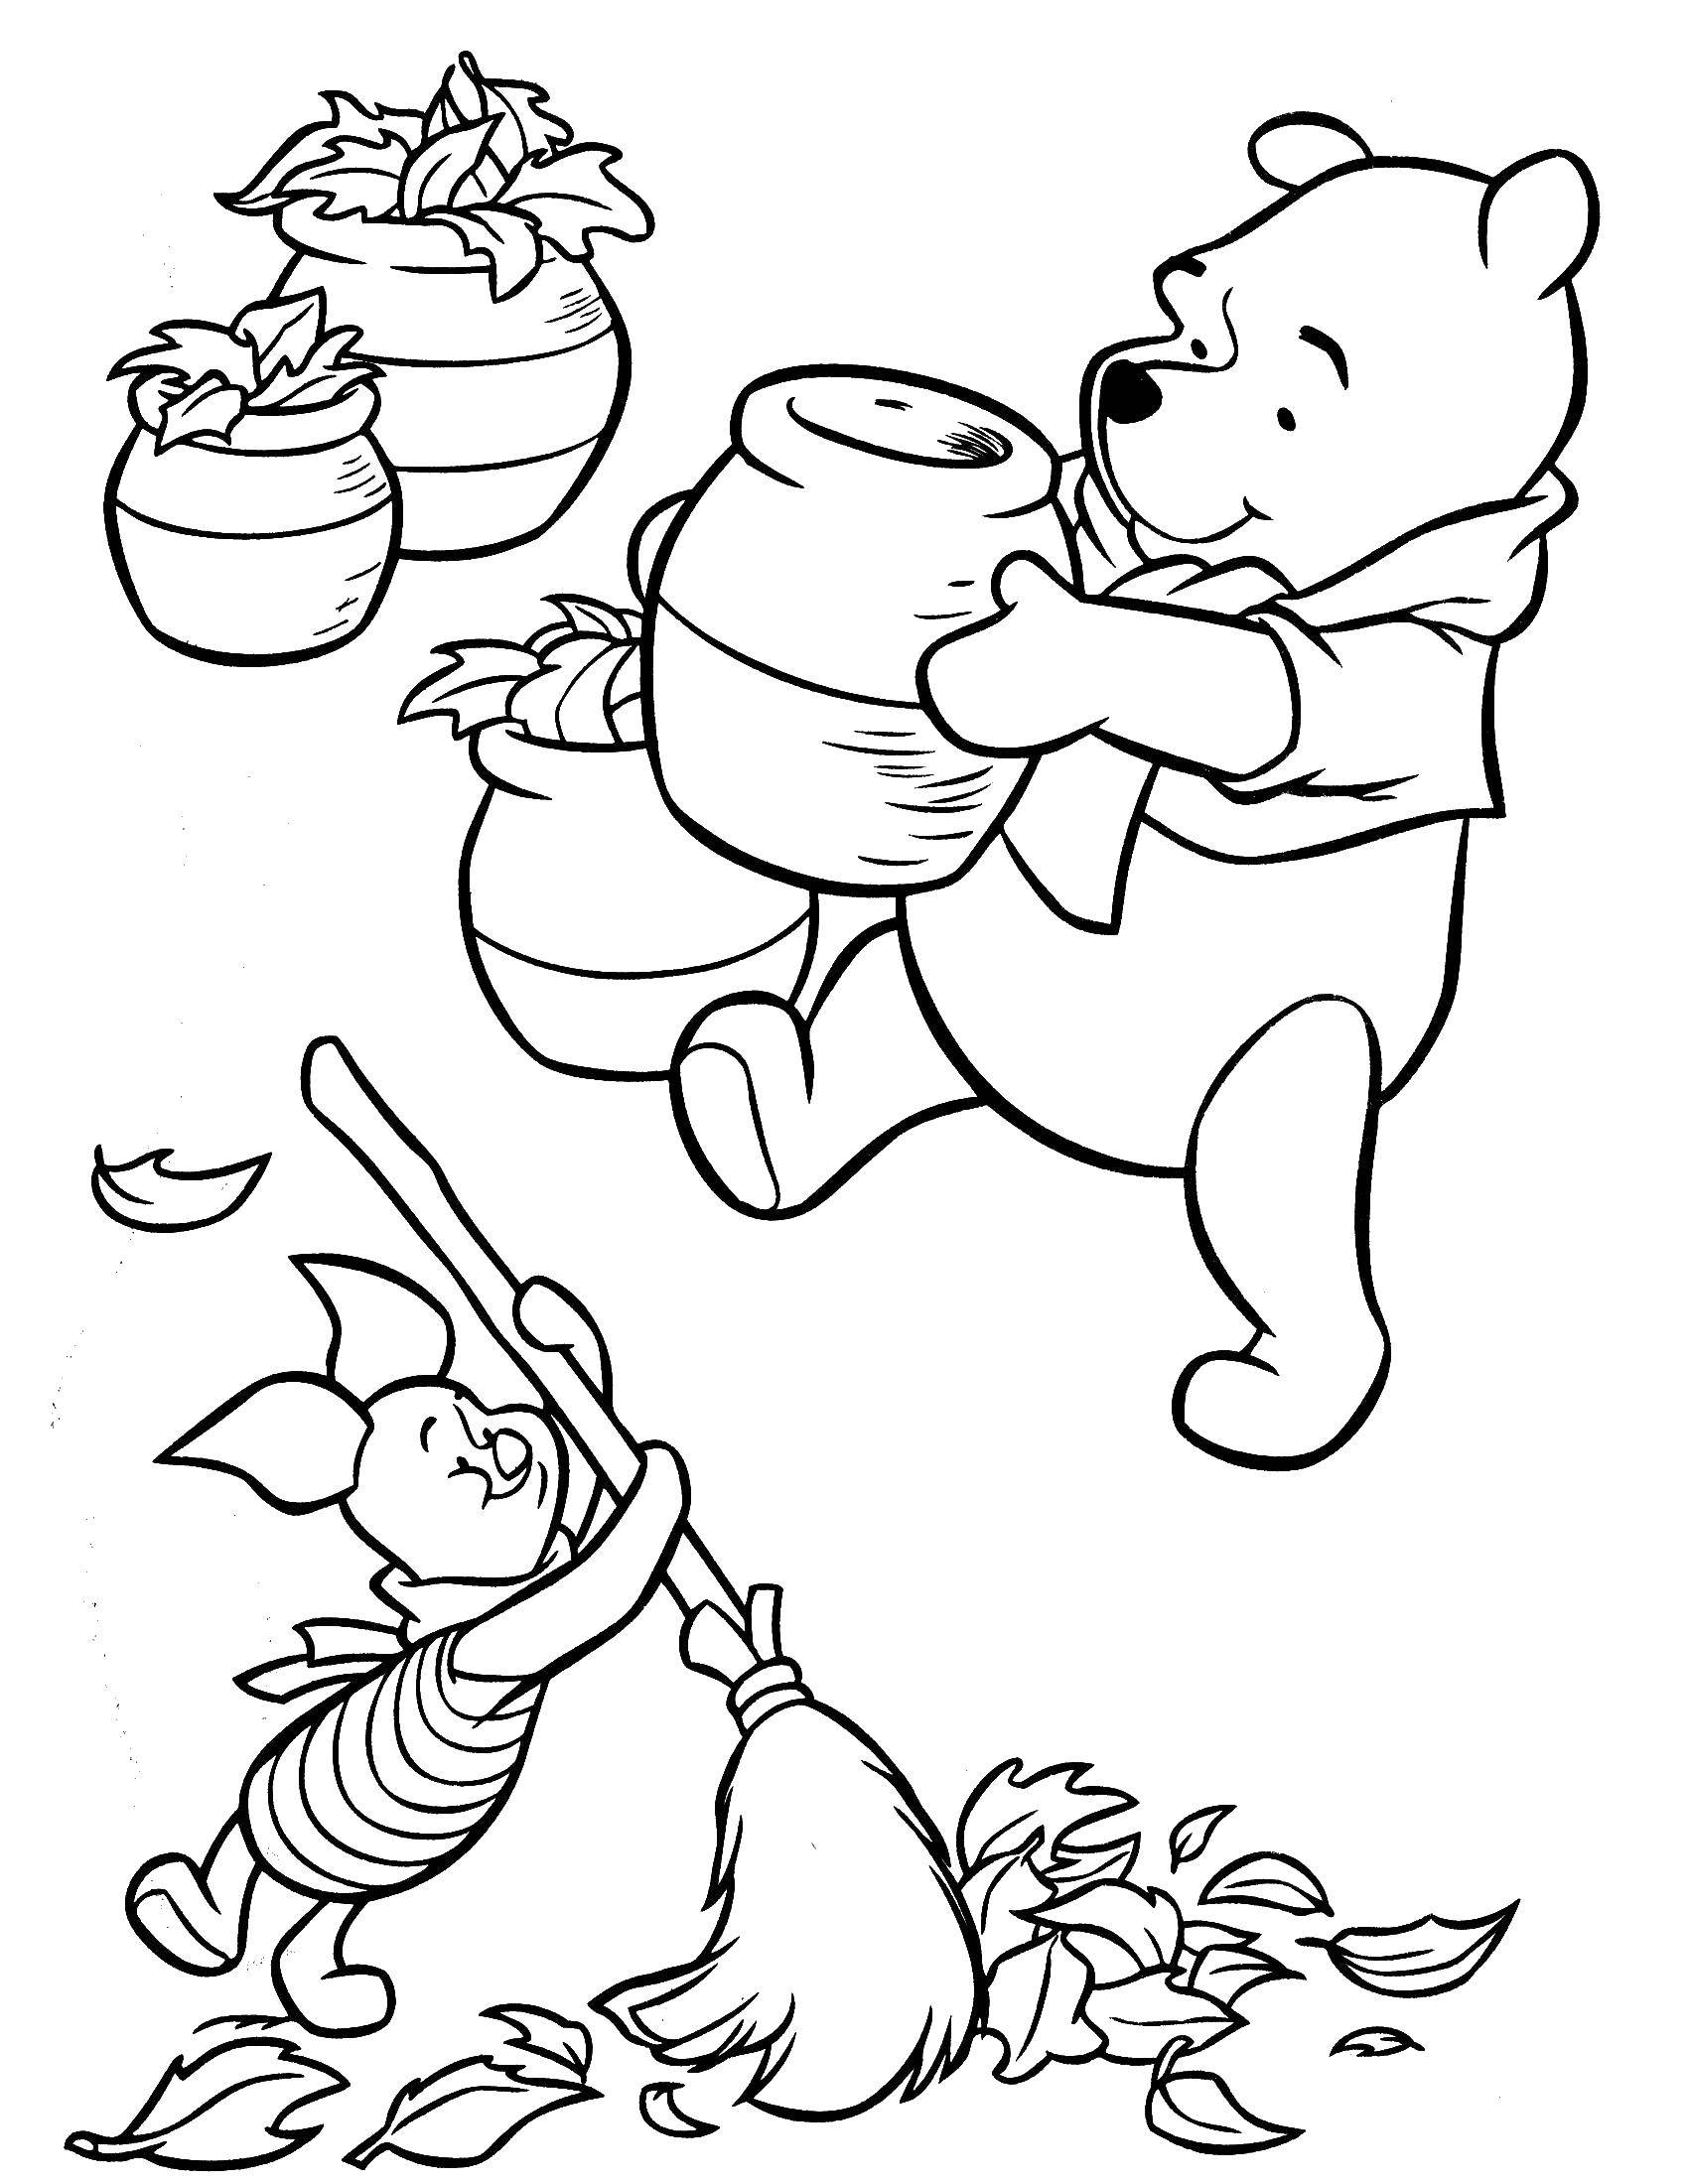 Раскраски из зарубежного мультфильма про Винни Пуха и его друзей для самых маленьких   Винни пух с медом и пяточек